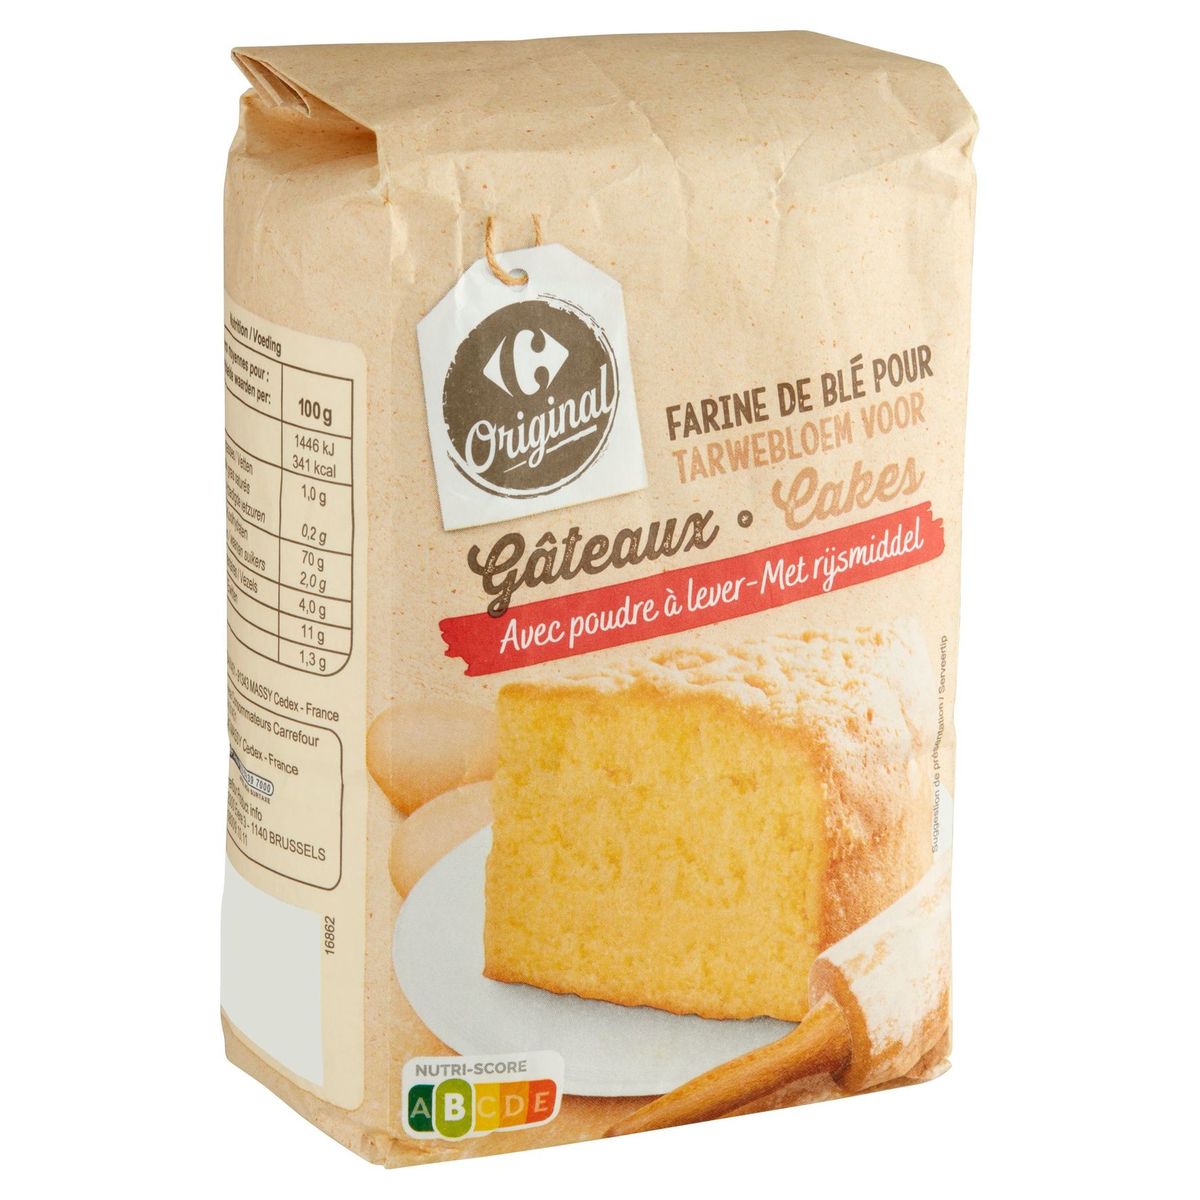 Carrefour Original Farine de Blé pour Gâteaux avec Poudre à Lever 1 kg